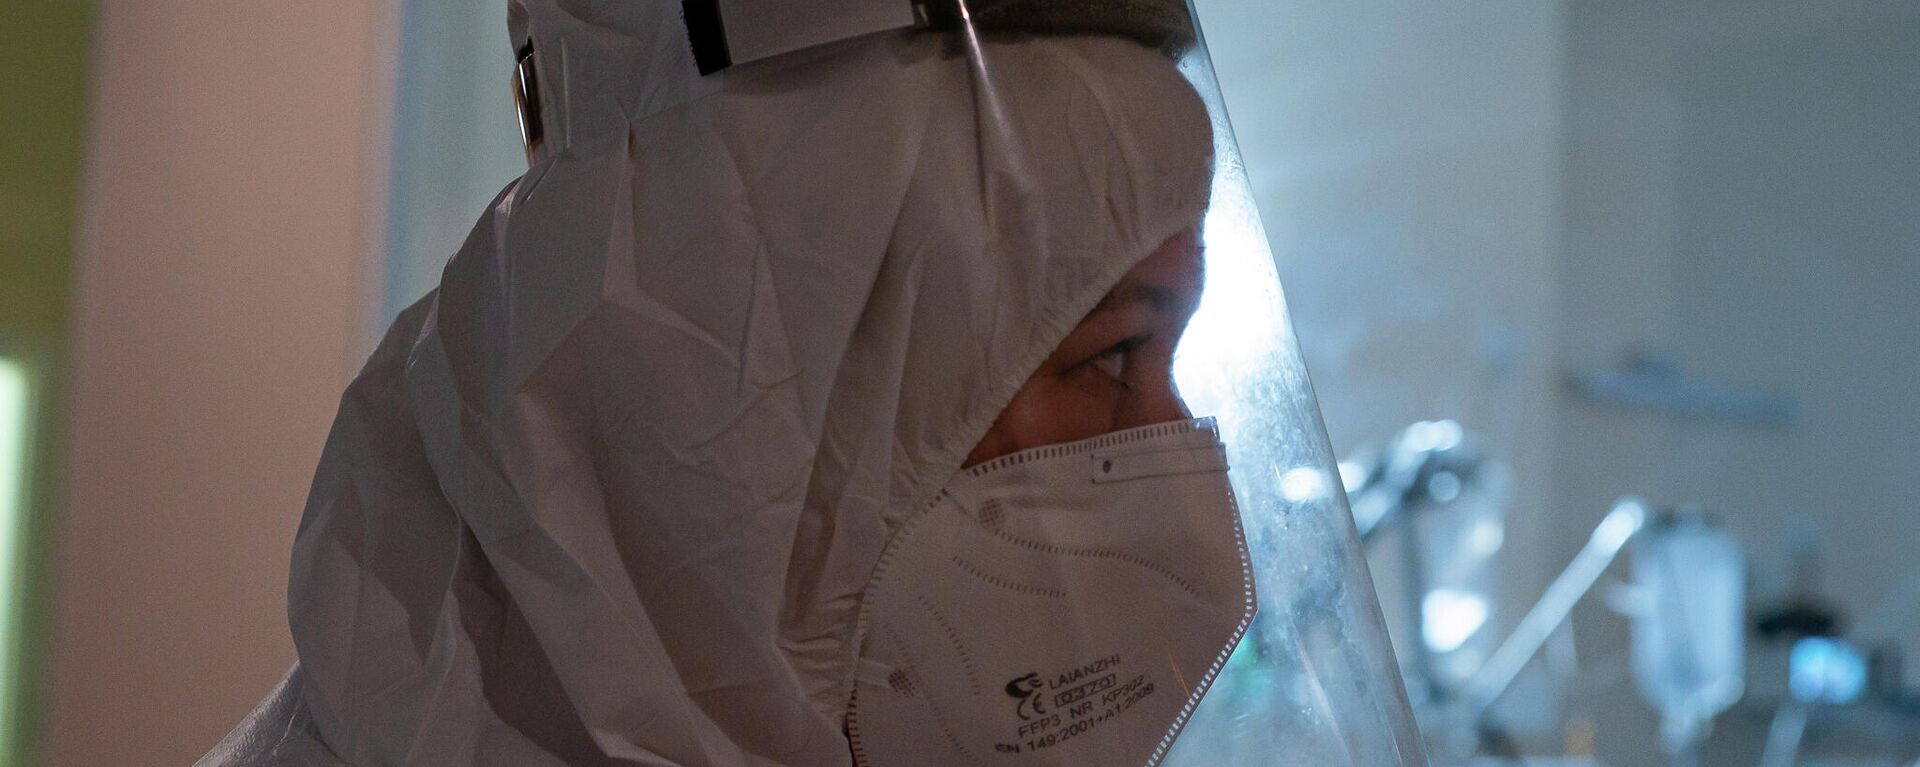 Медицинский работник в отделении интенсивной терапии в Центре легочных заболеваний и туберкулеза в Даугавпилсе - Sputnik Latvija, 1920, 03.11.2021